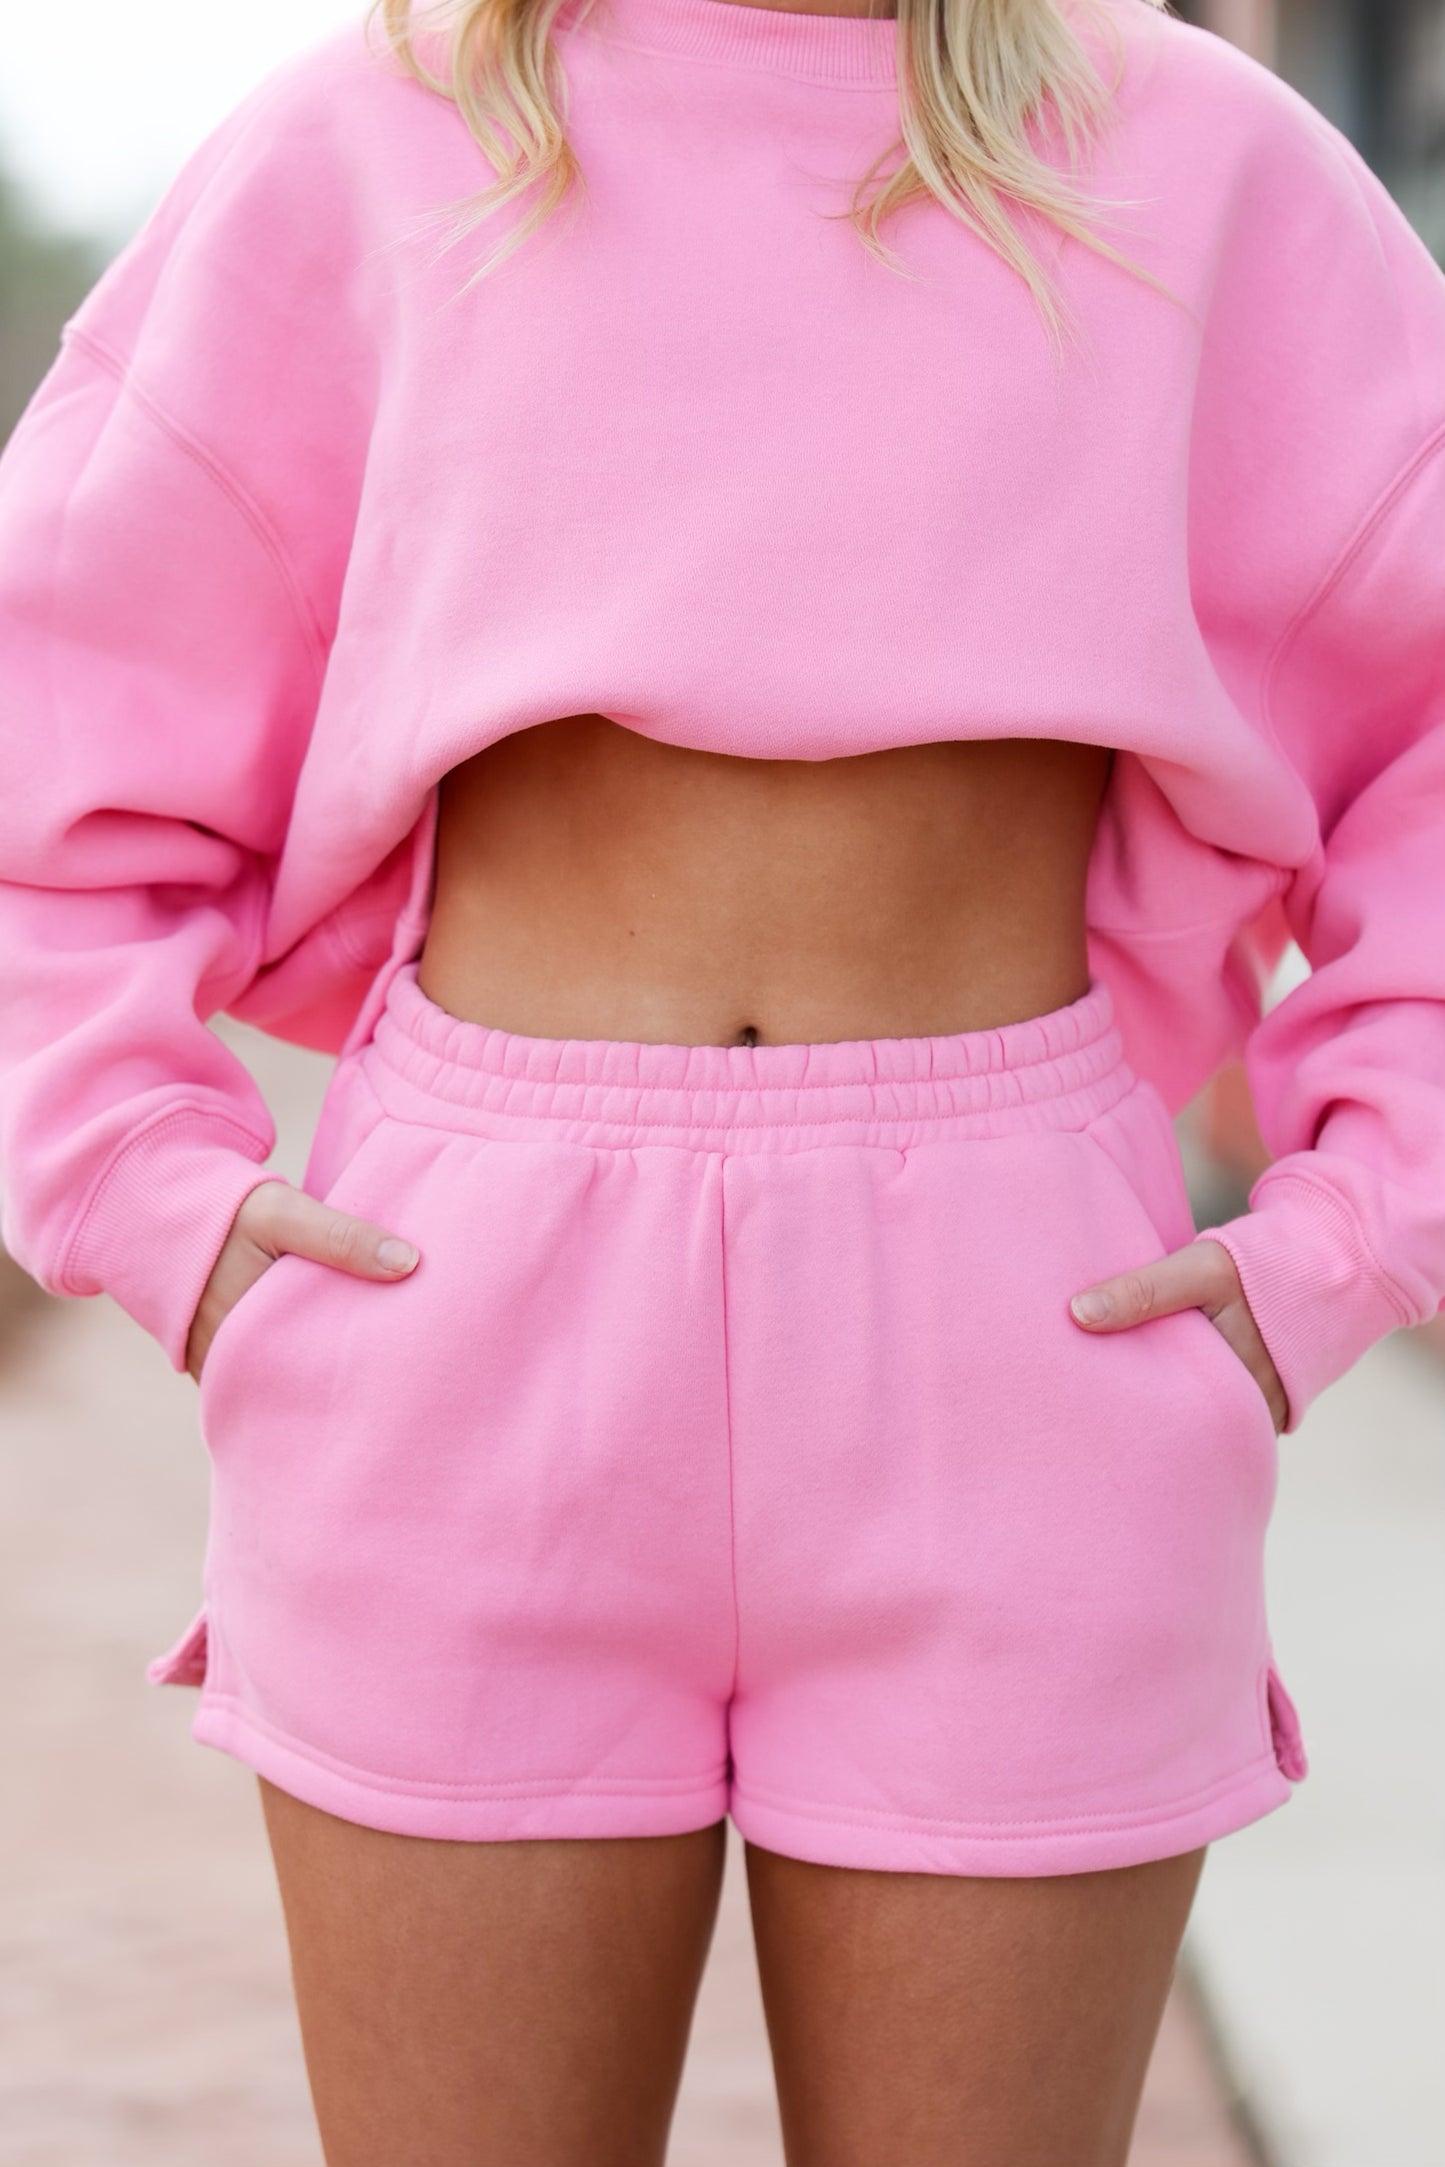 Hot Pink Shorts